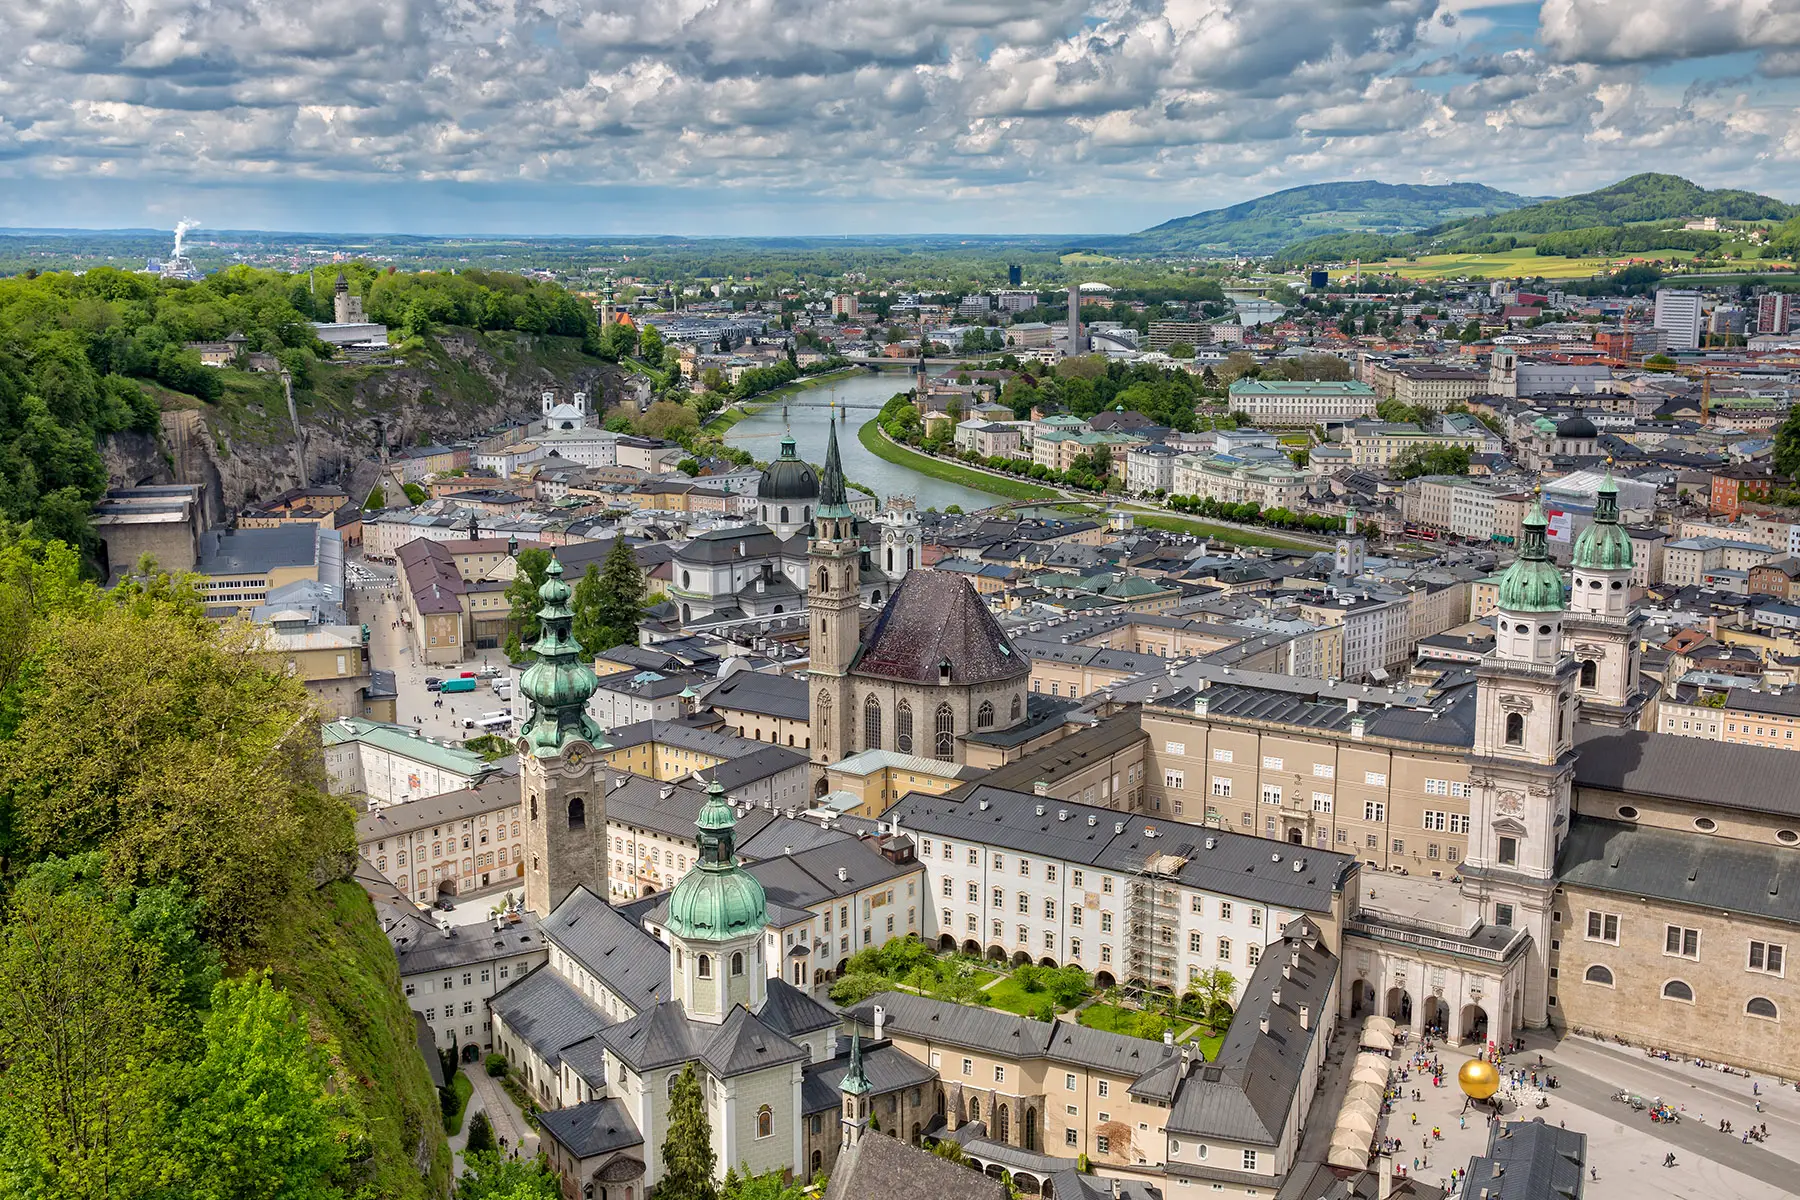 Skyline of Salzburg